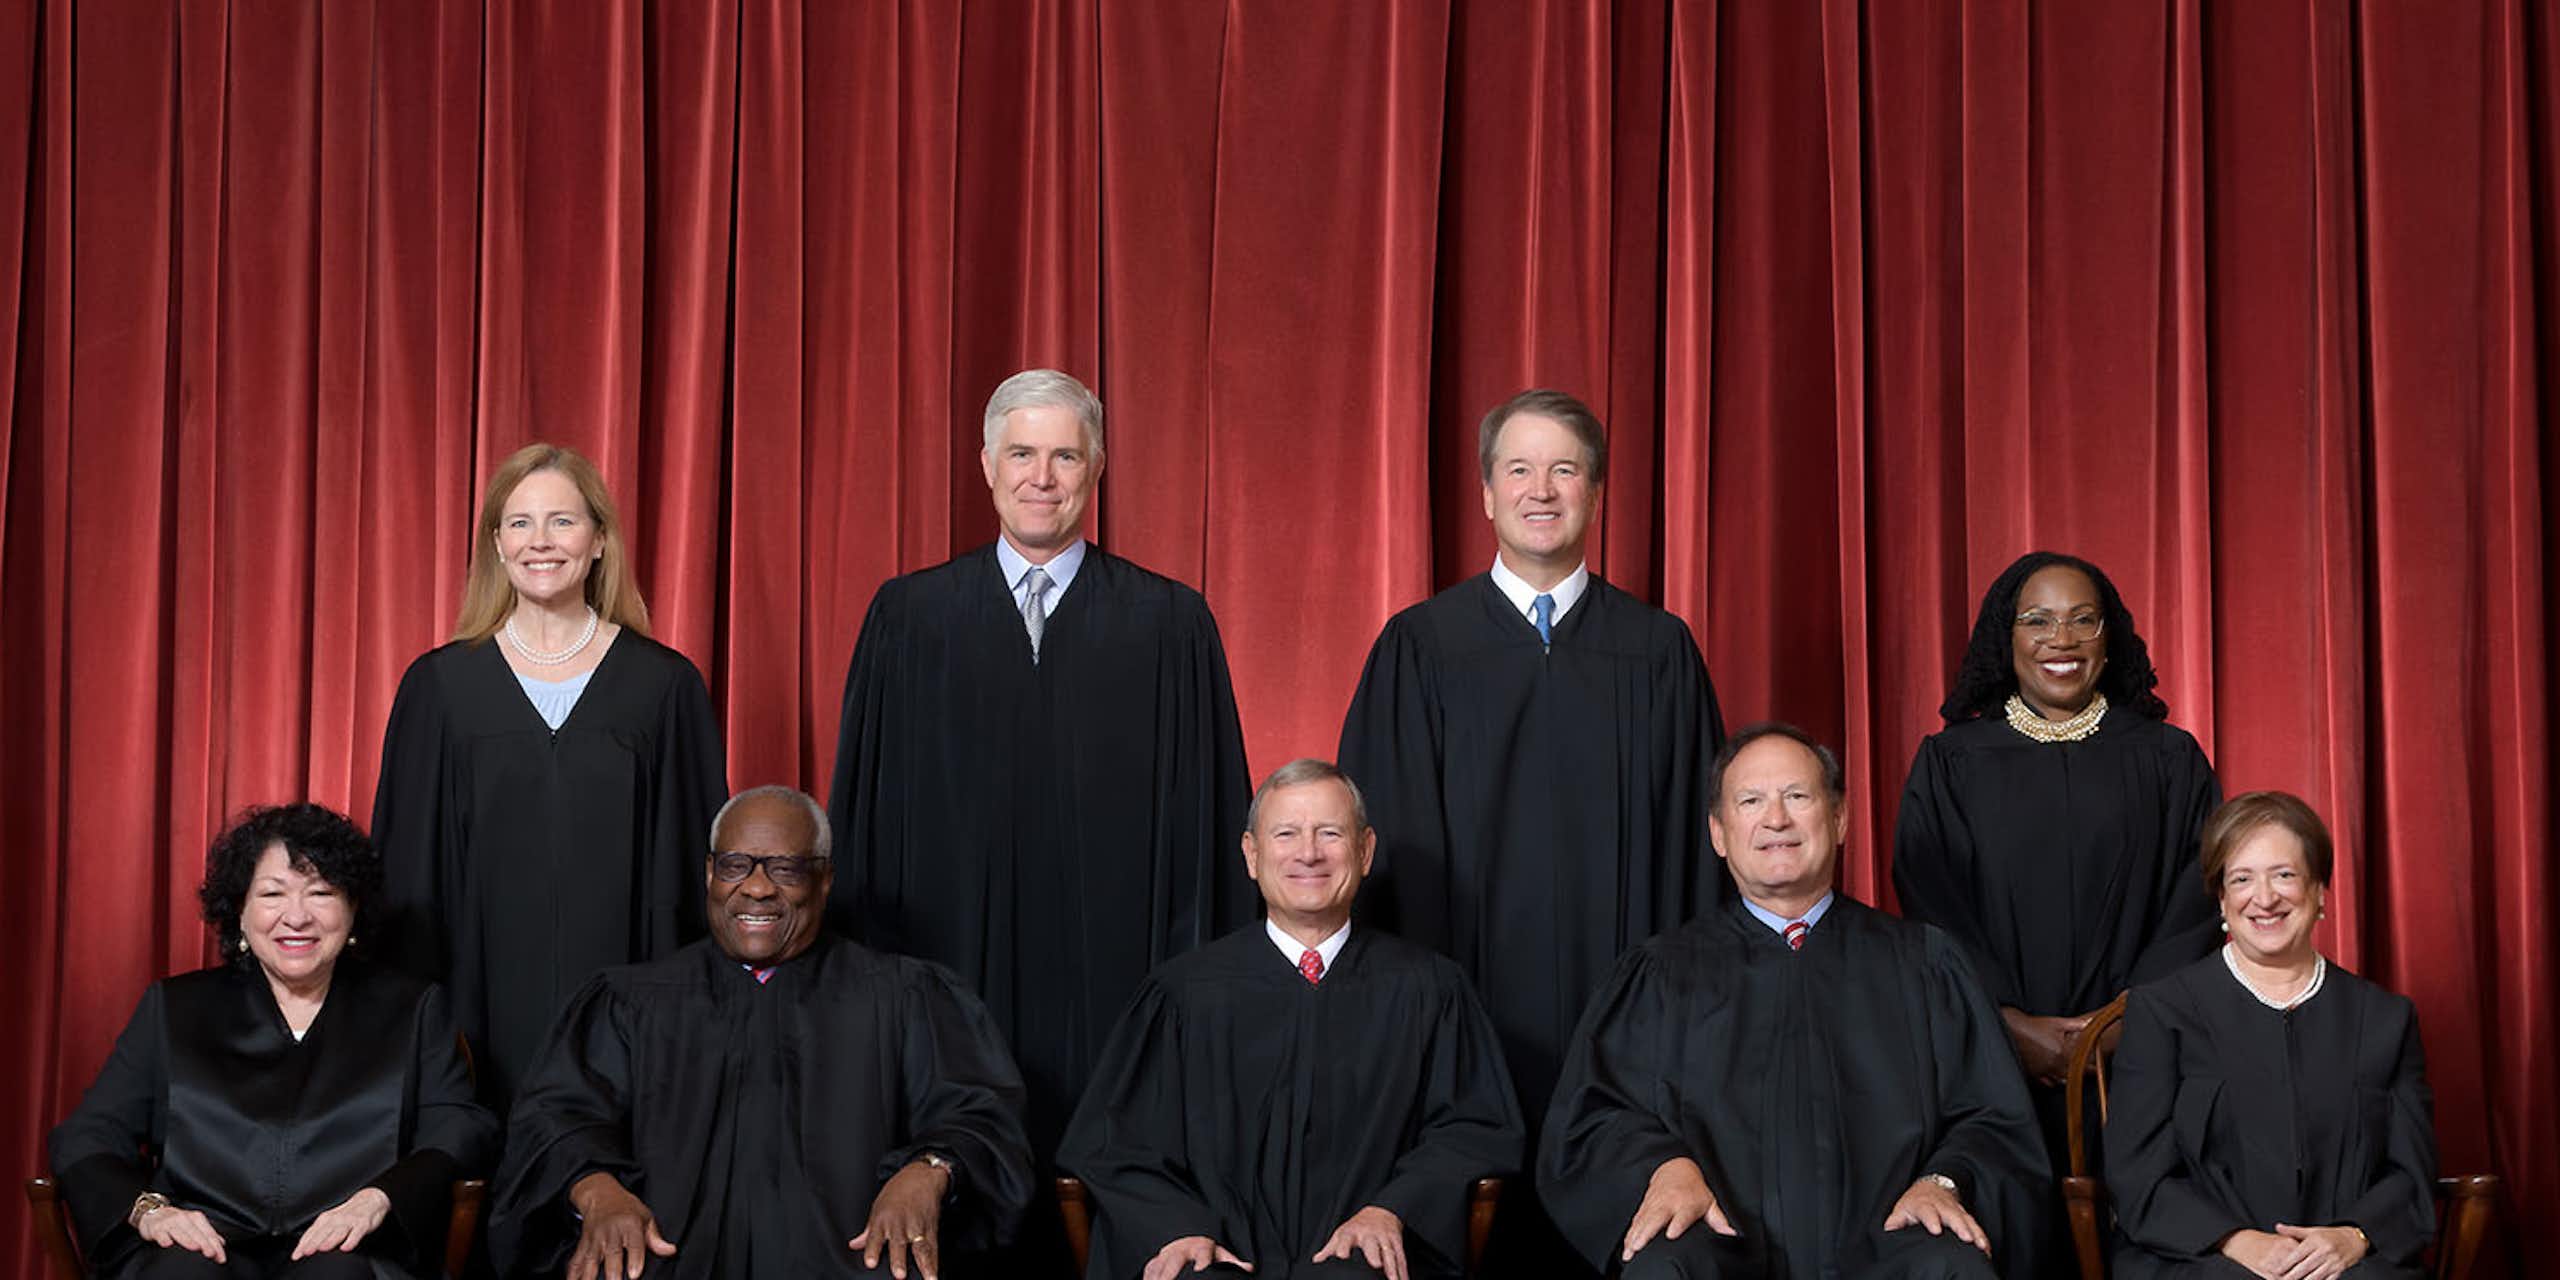 Les neuf juges de la Cour suprême des États-Unis prennent la pose en tenue officielle devant un rideau rouge